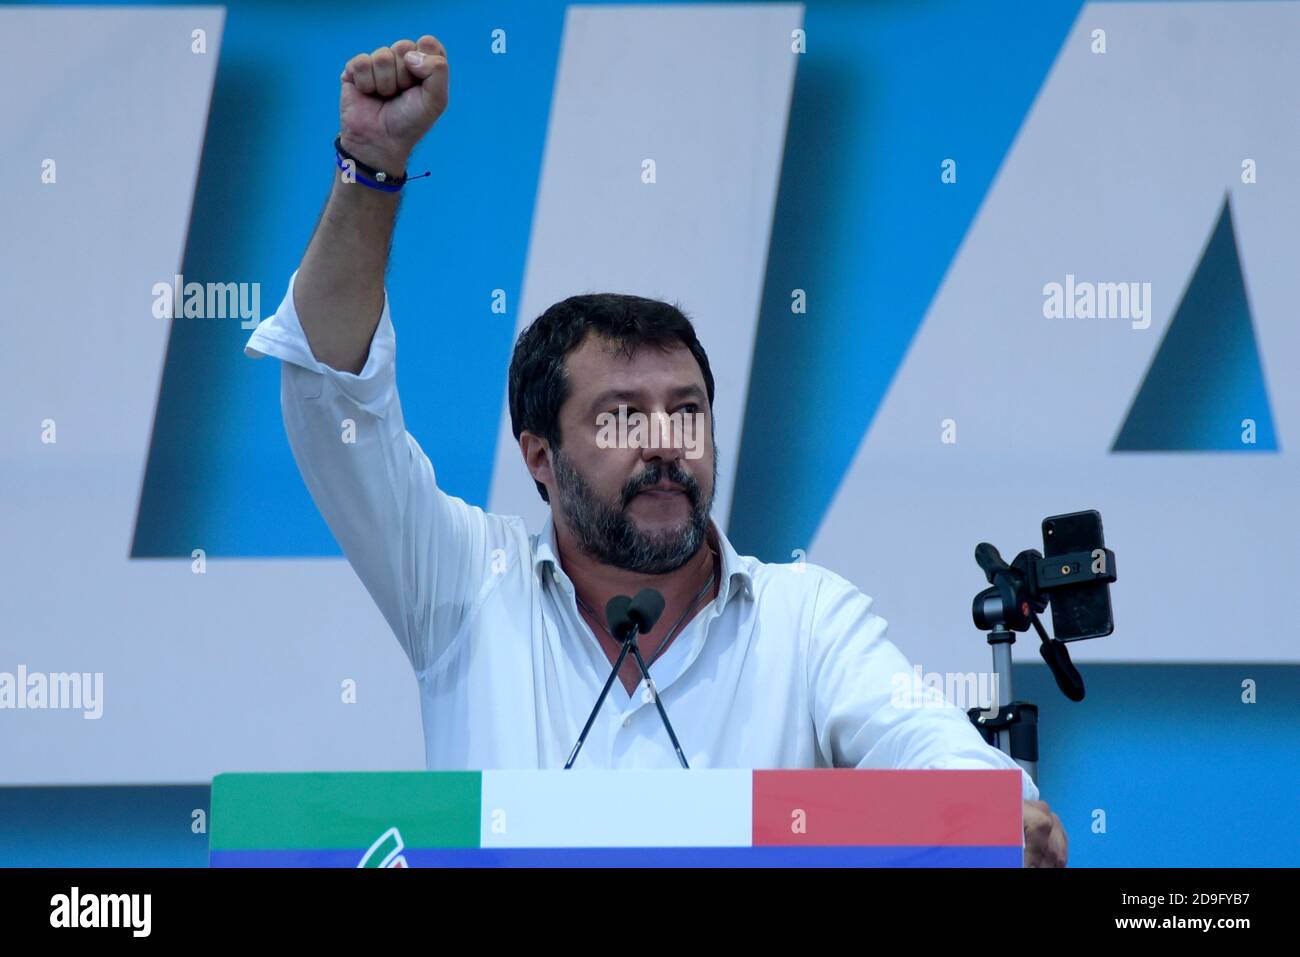 Matteo Salvini, chef de la partie Lega, s'exprimant sur scène lors de l'événement « fierté italienne » sur la Piazza San Giovanni, qui réunit les partis de droite italiens Lega, Fratelli d'Italia et Forza Italia. Banque D'Images